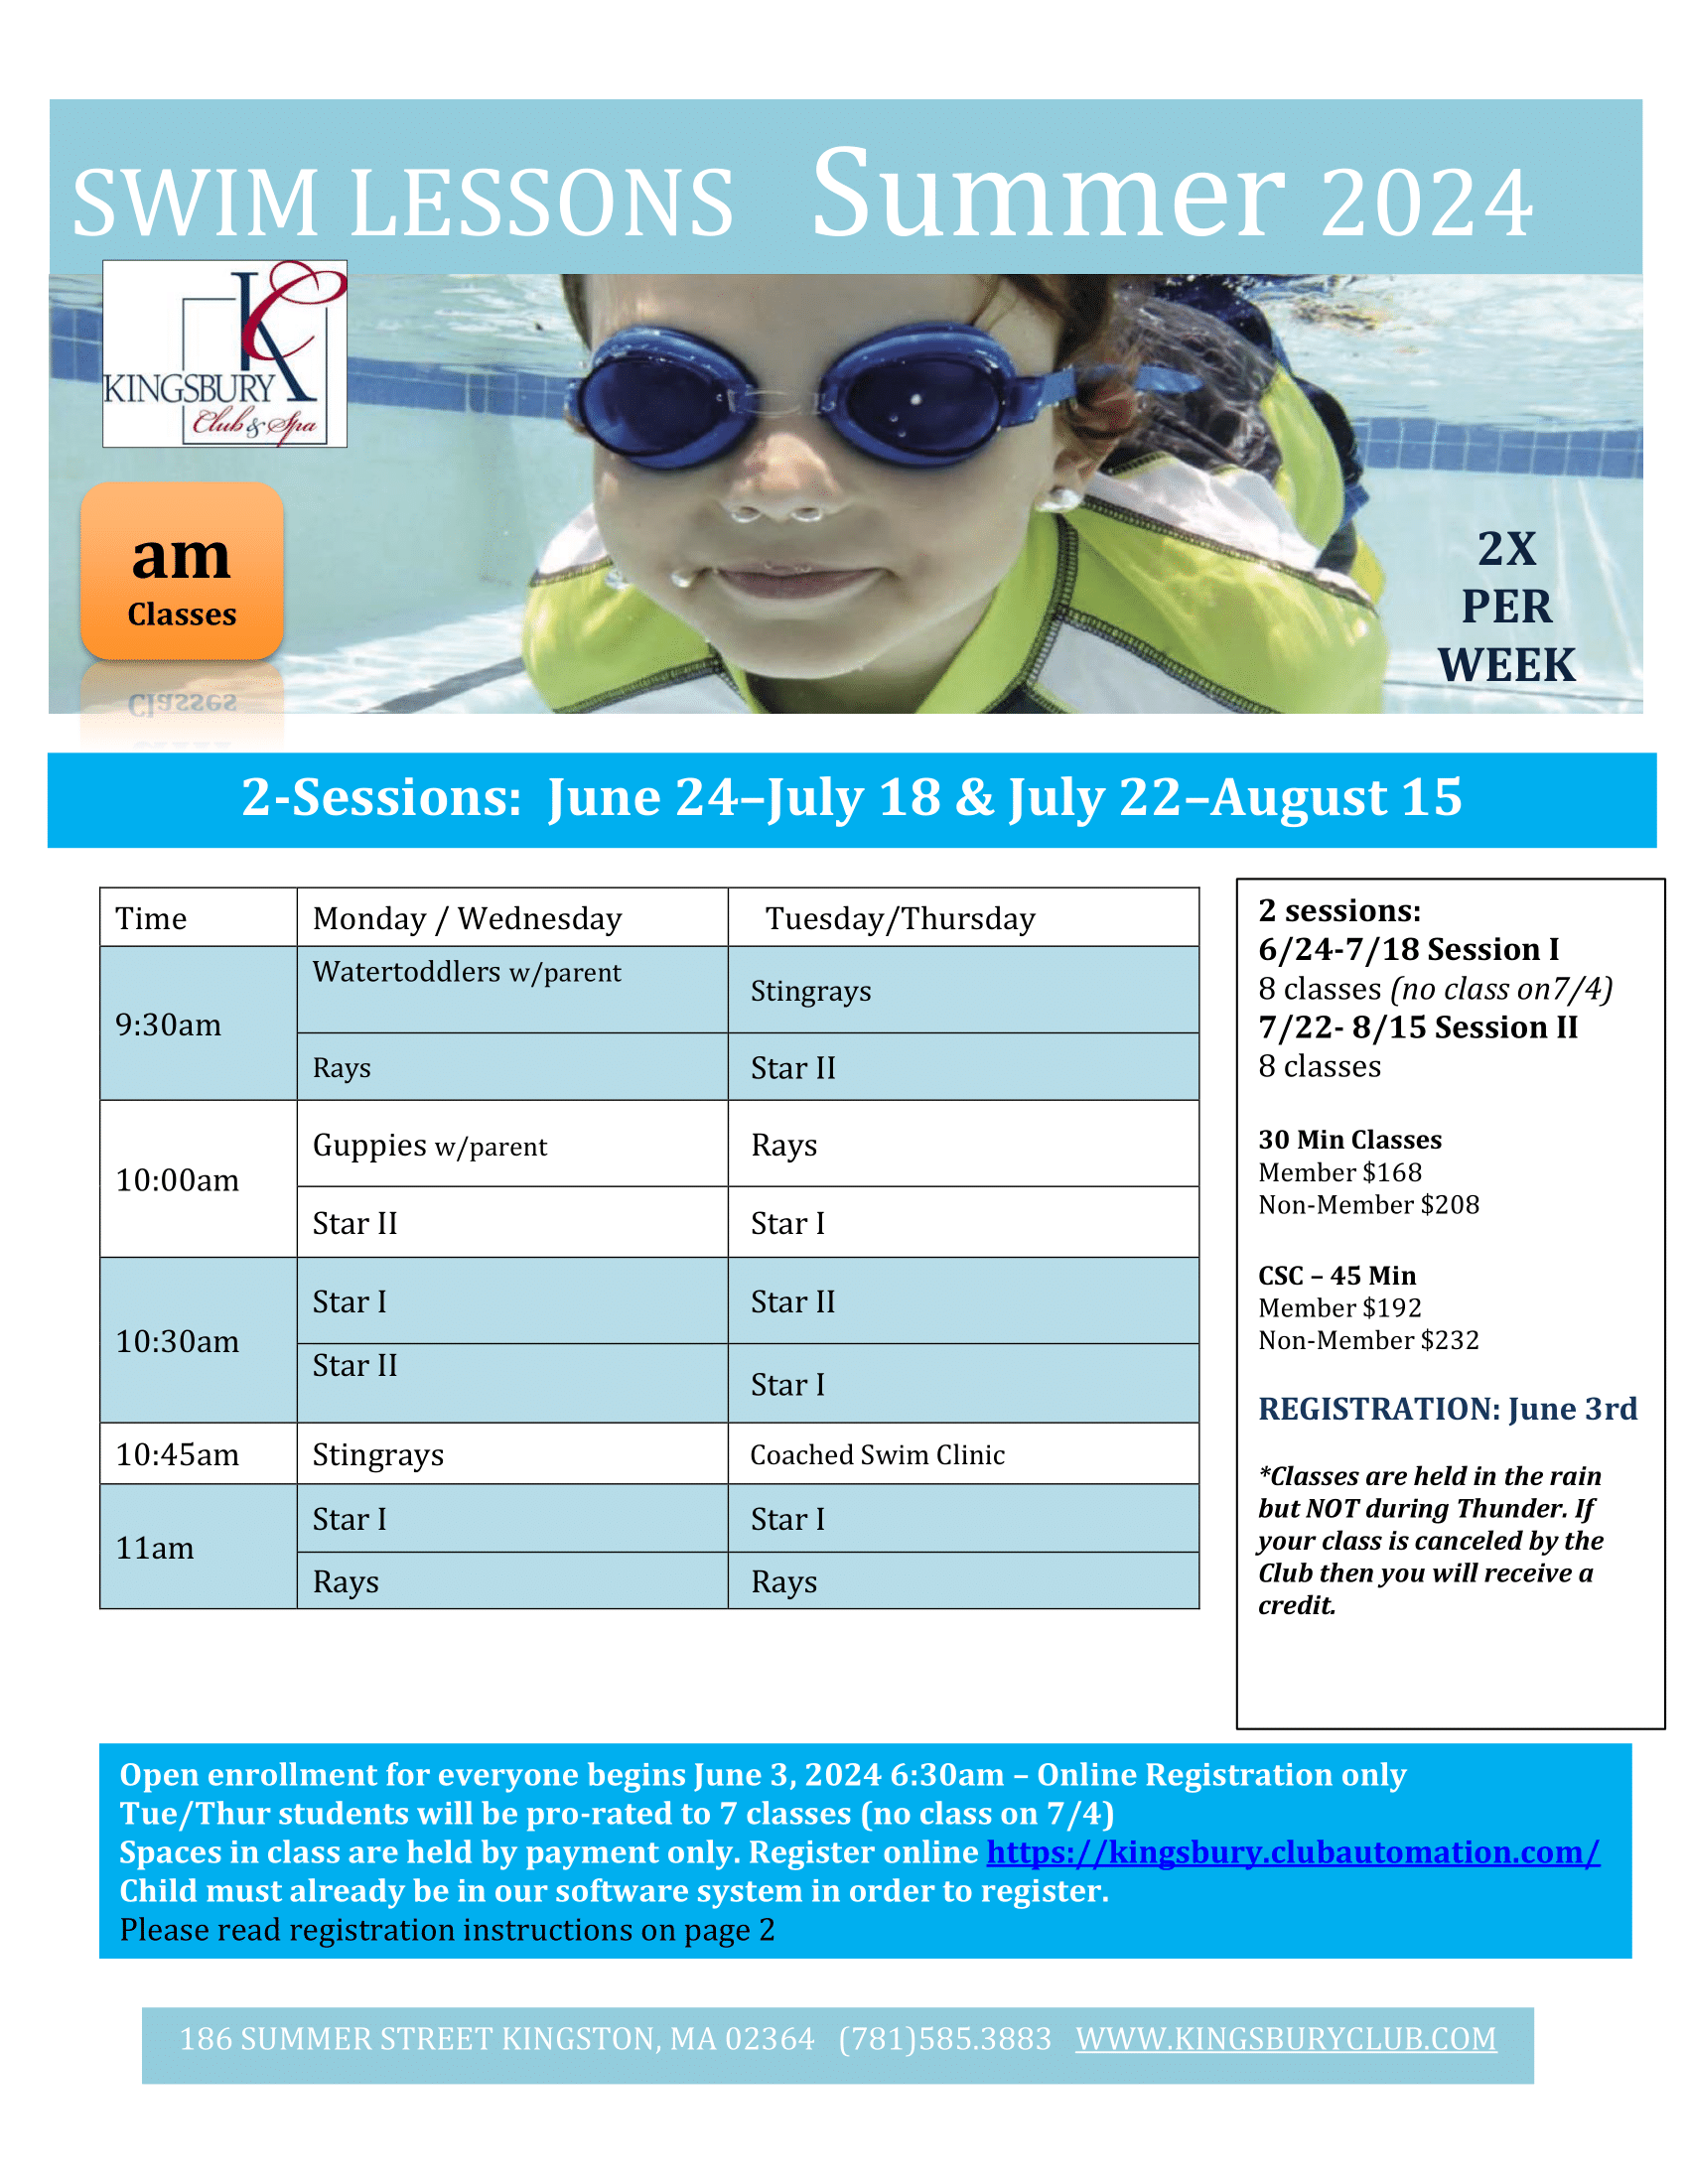 Revised Summer Swim Schedule